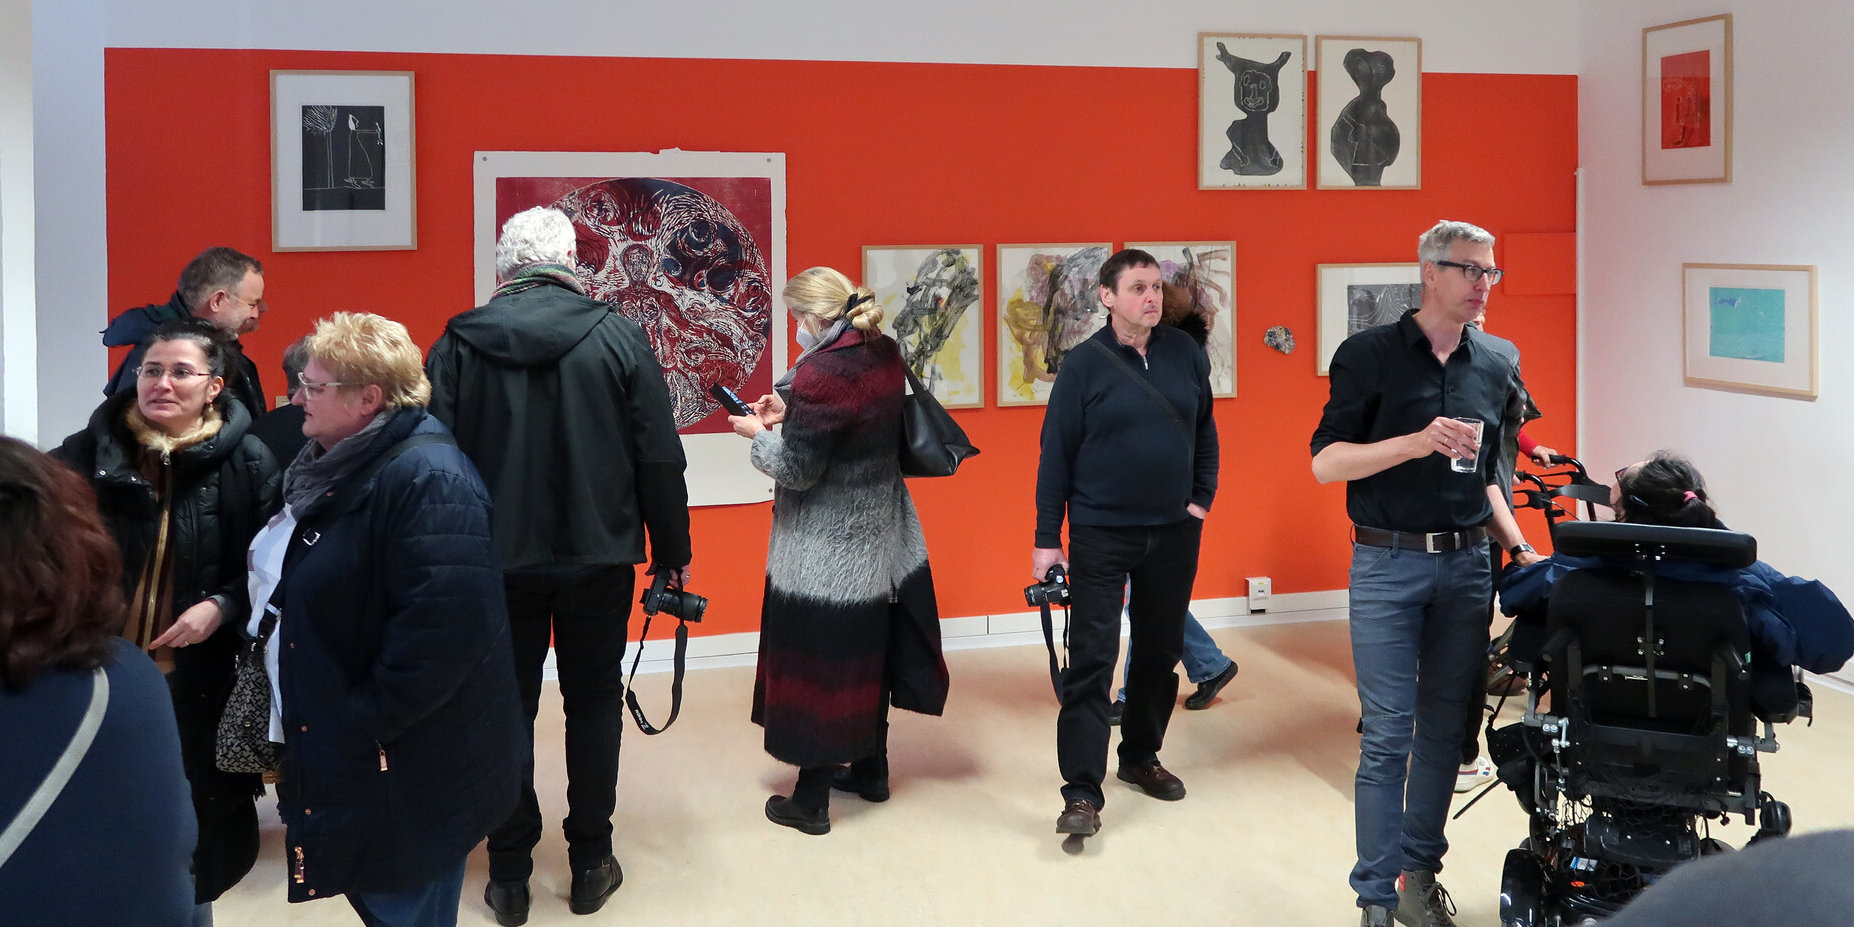 Viele Personen in einem Raum vor einer roten Wand mit Ausstellungsstücken